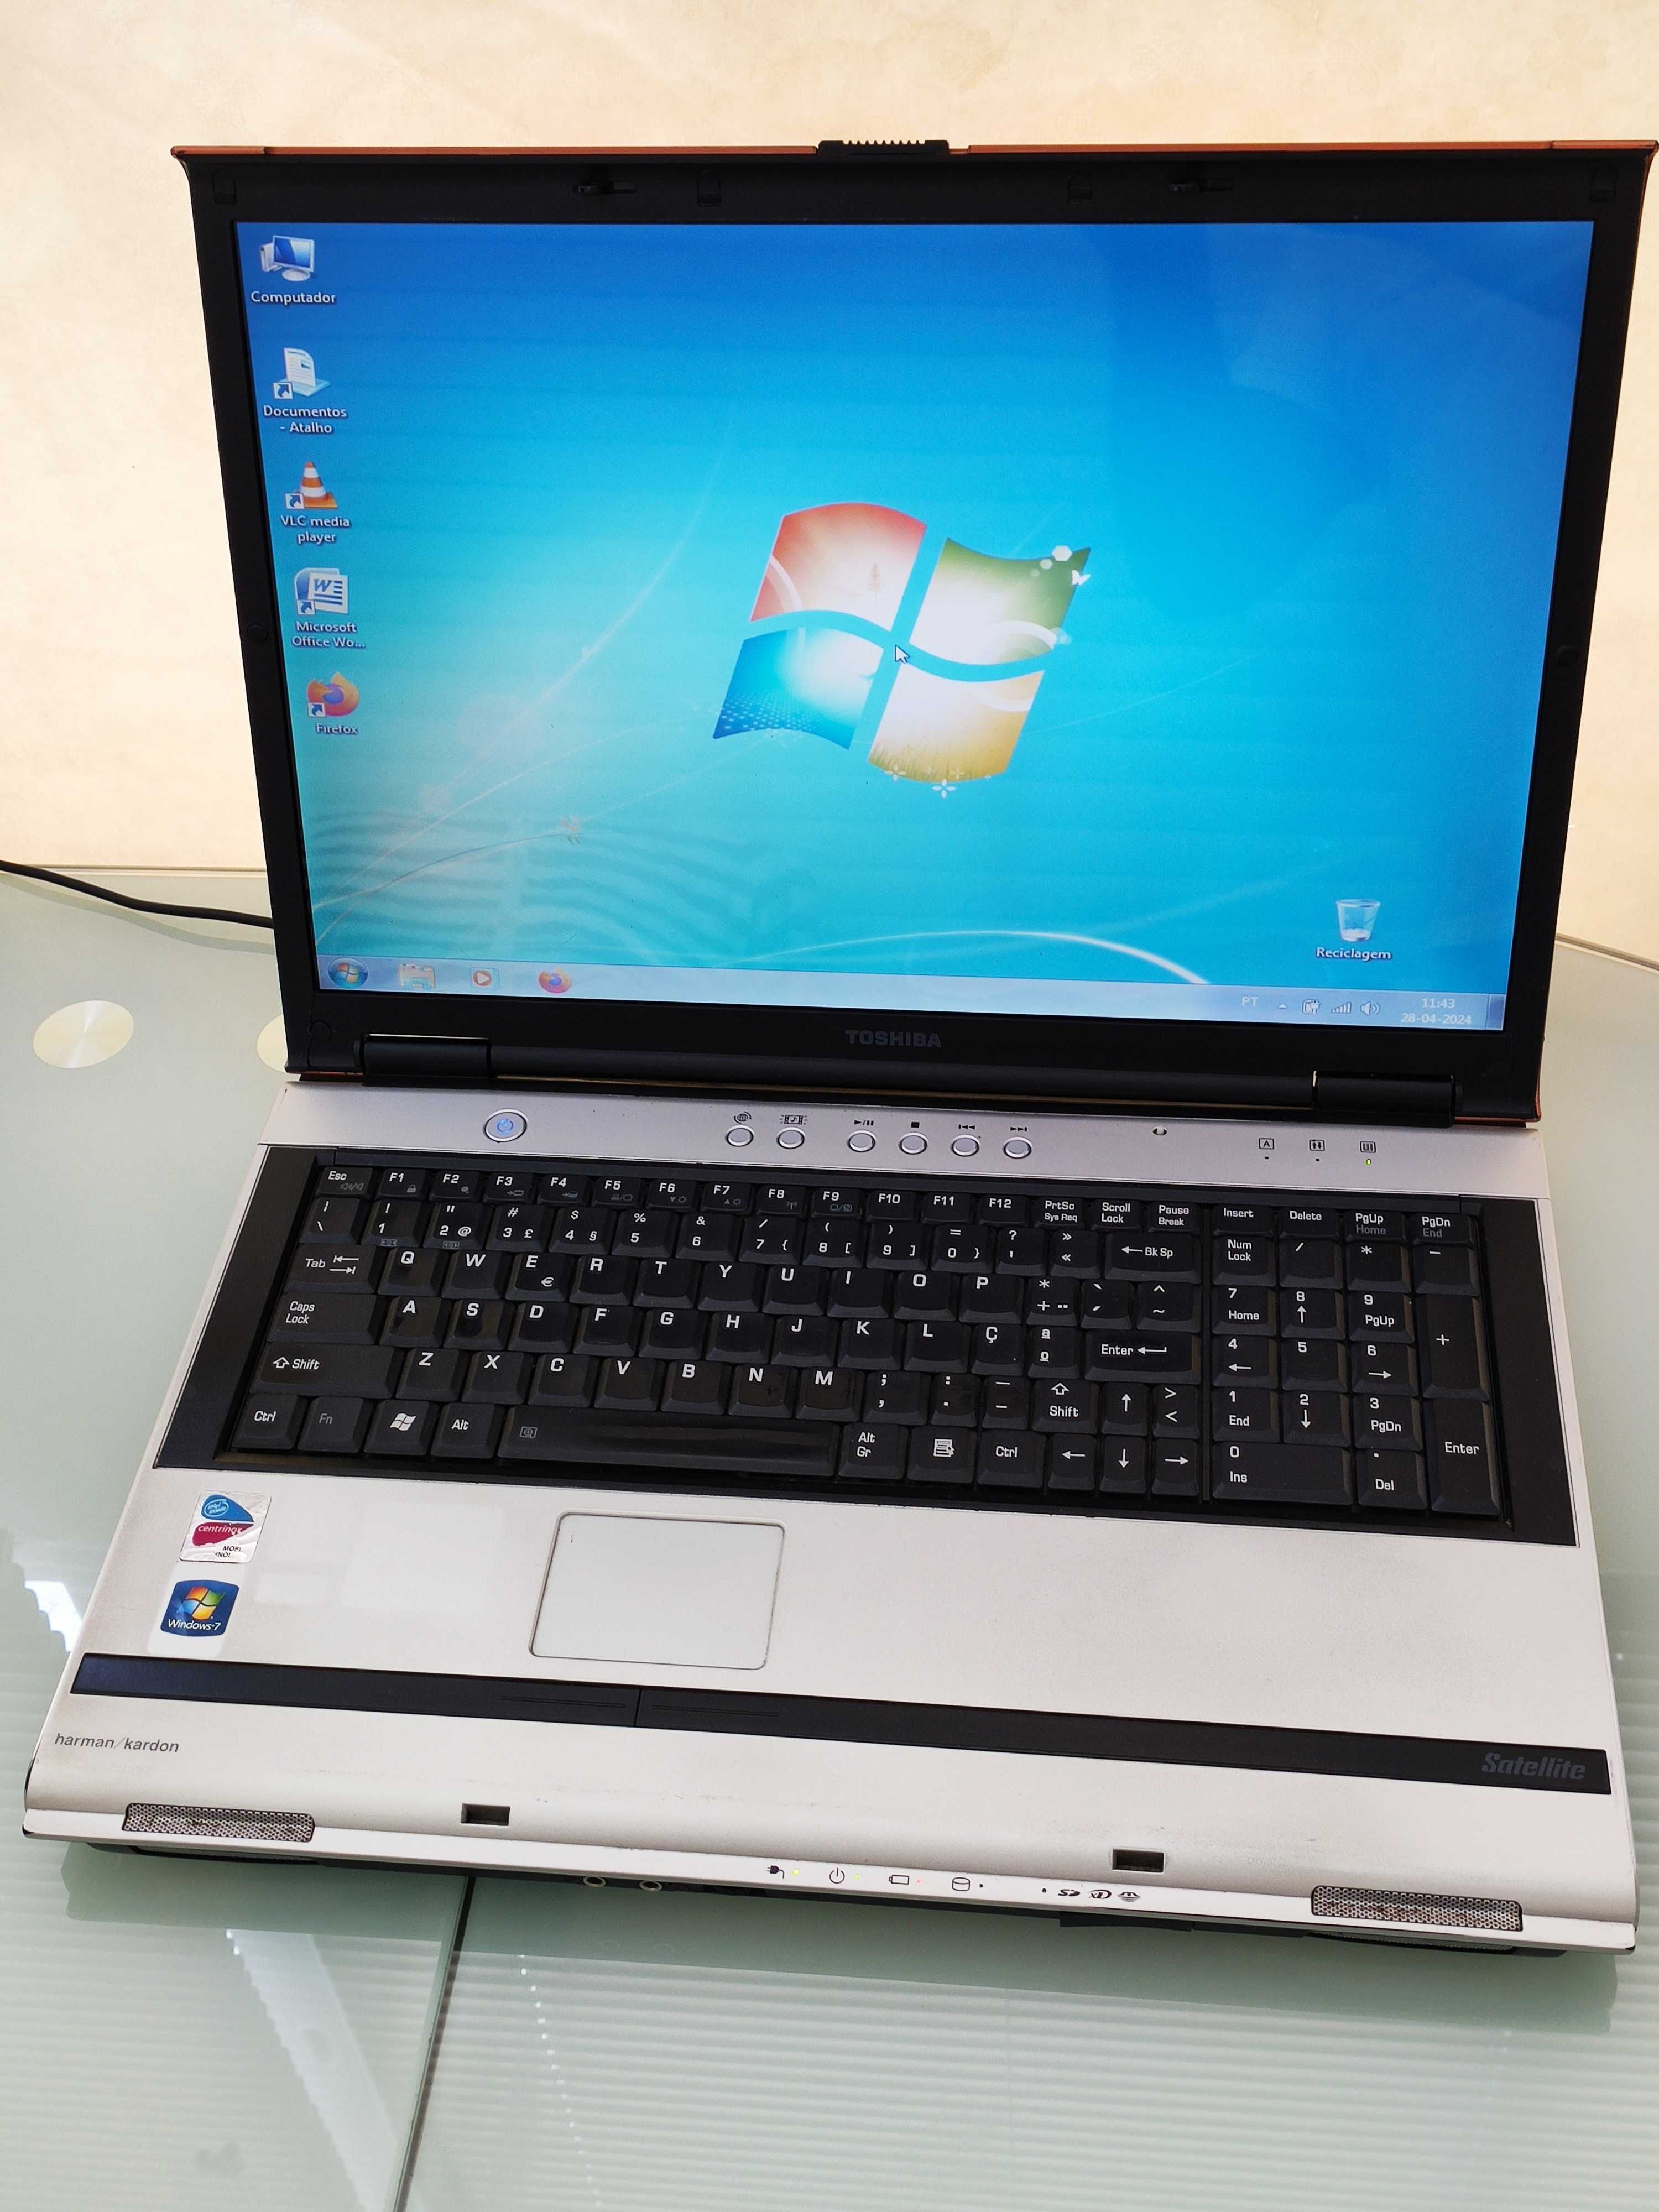 Computador Portátil TOSHIBA Ecrã 17'' Windows 7 | 4 GB Ram | Impecável